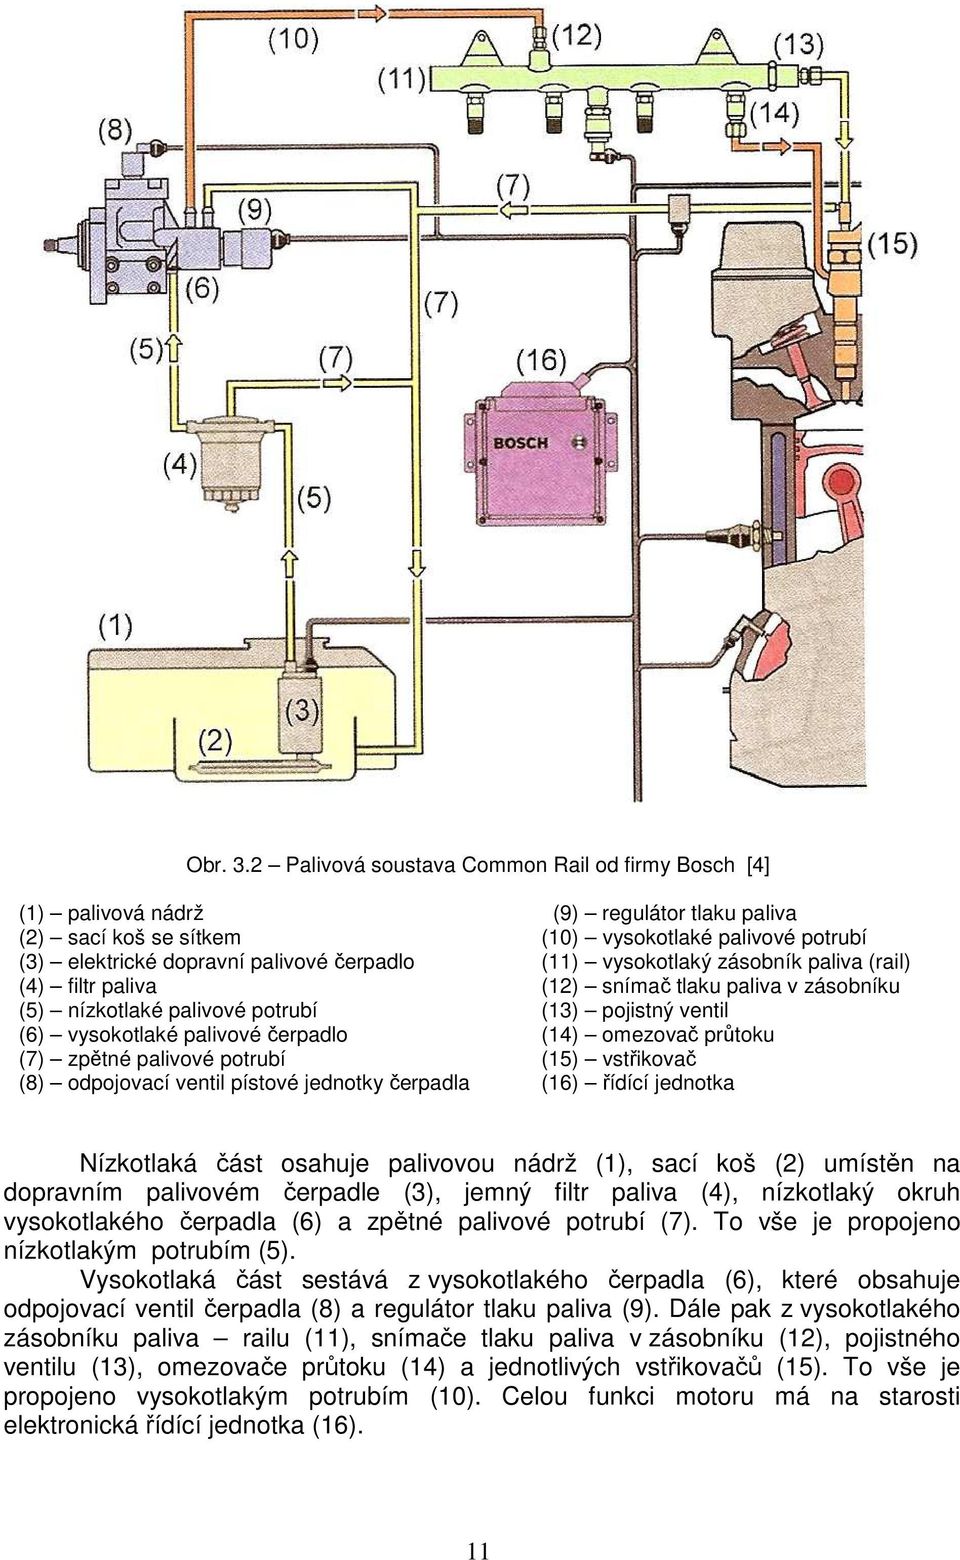 (11) vysokotlaký zásobník paliva (rail) (4) filtr paliva (12) snímač tlaku paliva v zásobníku (5) nízkotlaké palivové potrubí (13) pojistný ventil (6) vysokotlaké palivové čerpadlo (14) omezovač